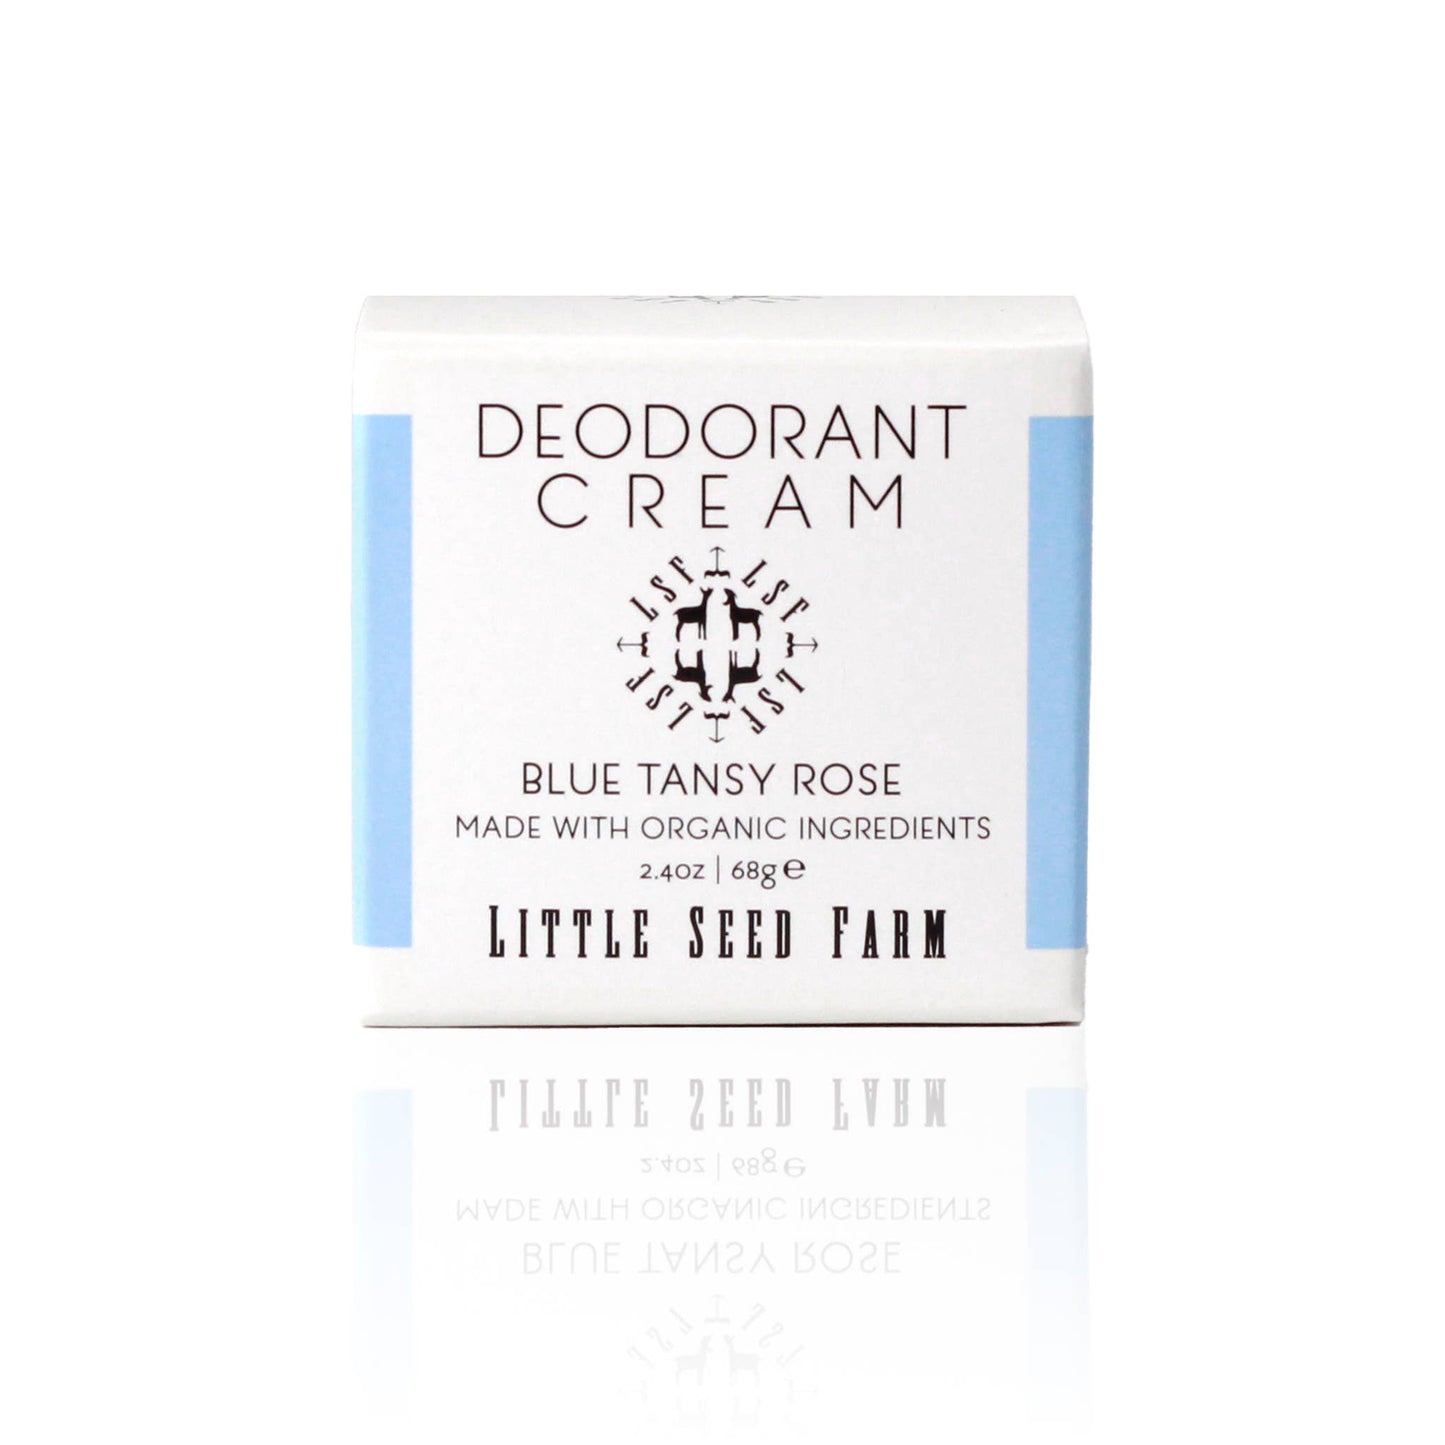 Blue Tansy Rose Deodorant Cream